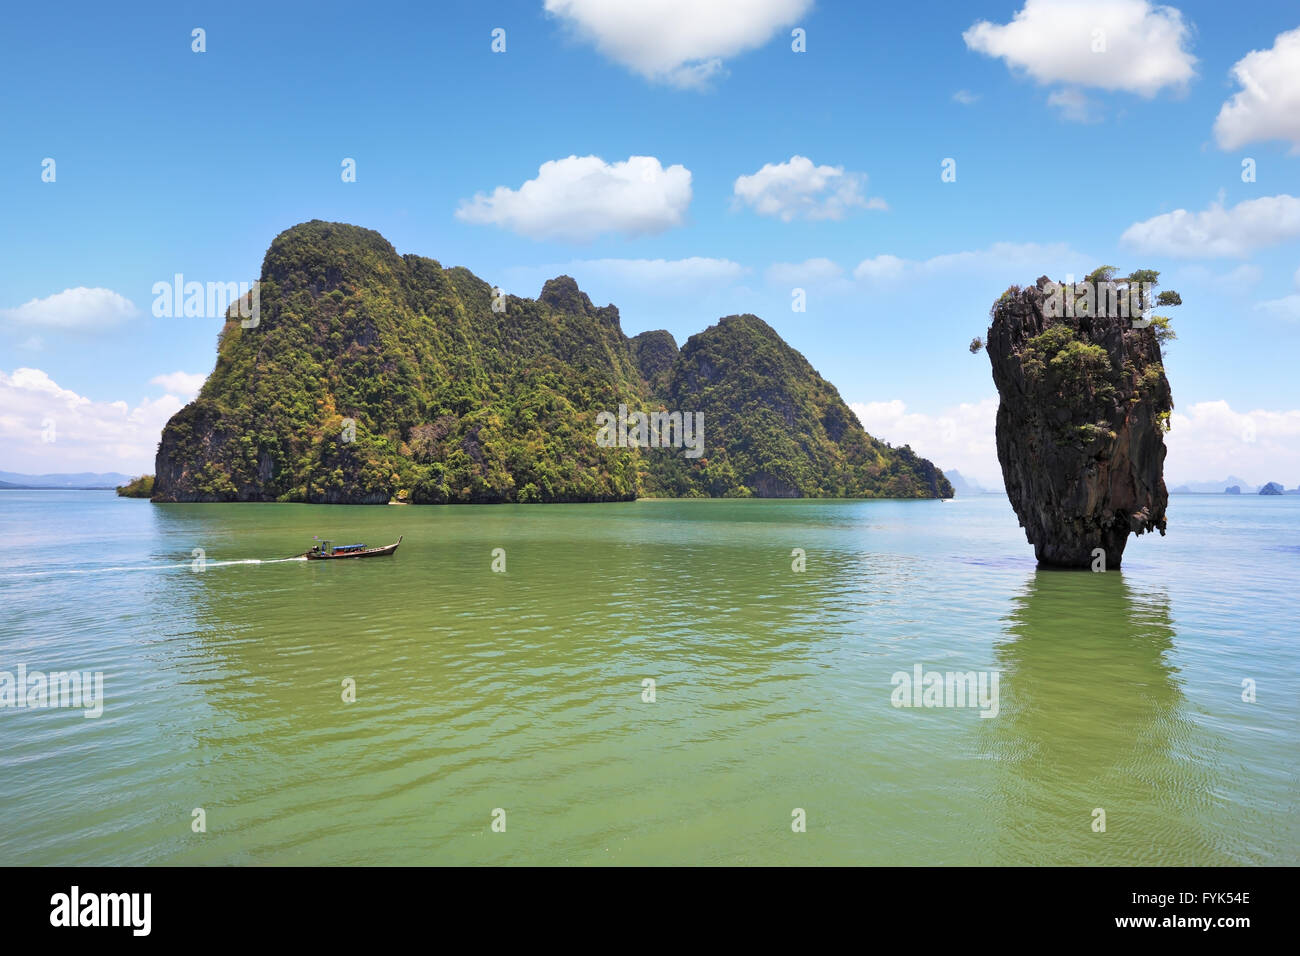 Thailandia. La magnifica isola di James Bond Foto Stock